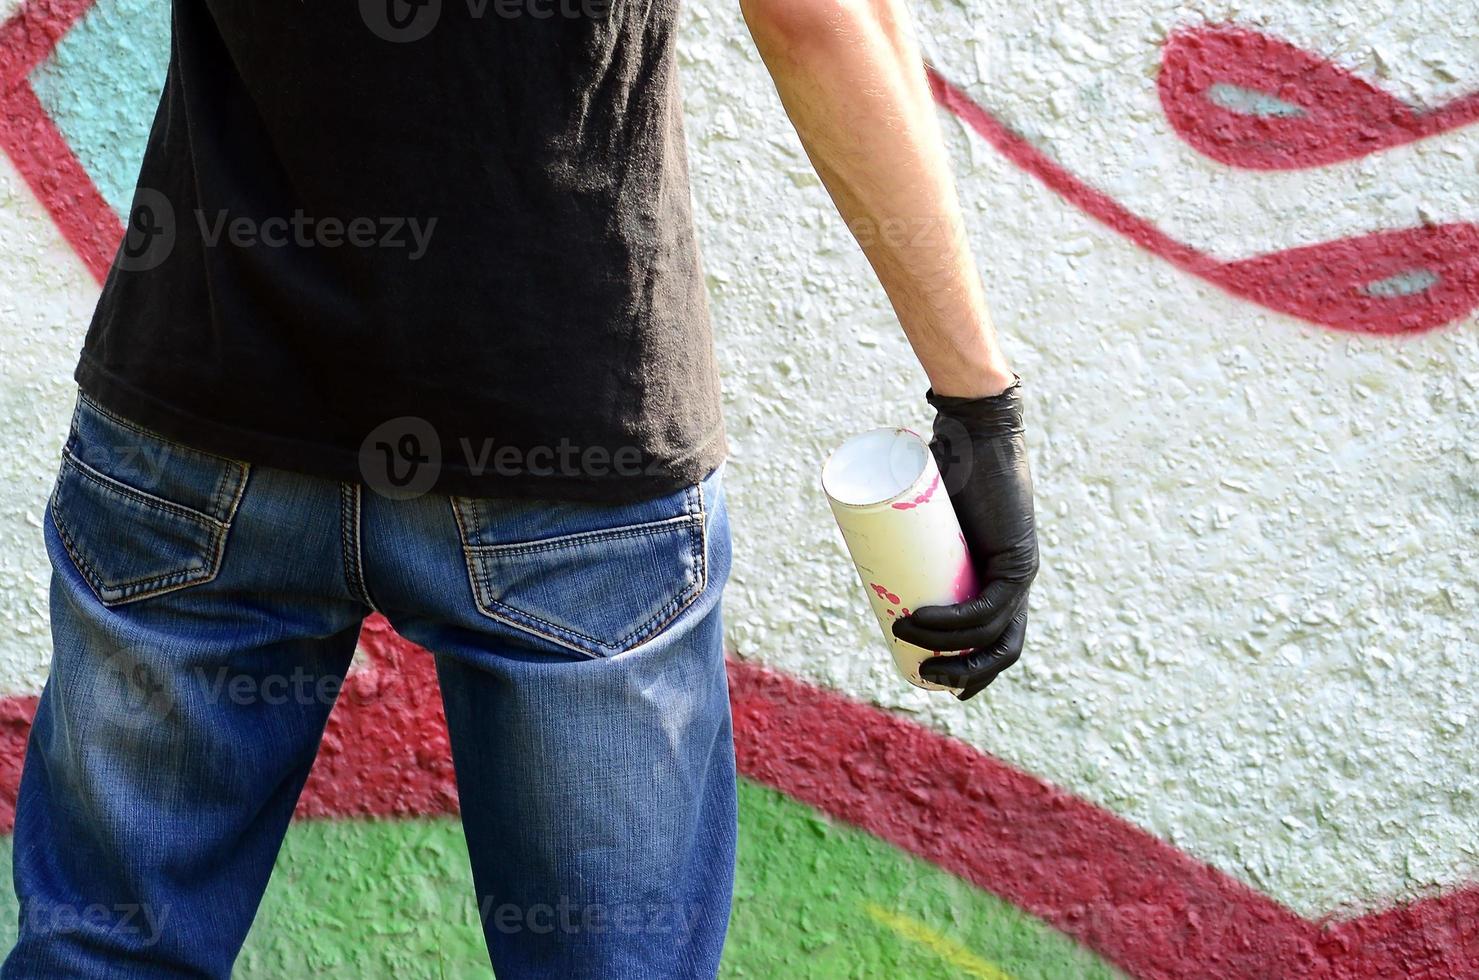 Ein junger Hooligan mit einer Spraydose steht an einer Betonwand mit Graffiti-Gemälden. illegales vandalismuskonzept. Straßenkunst foto